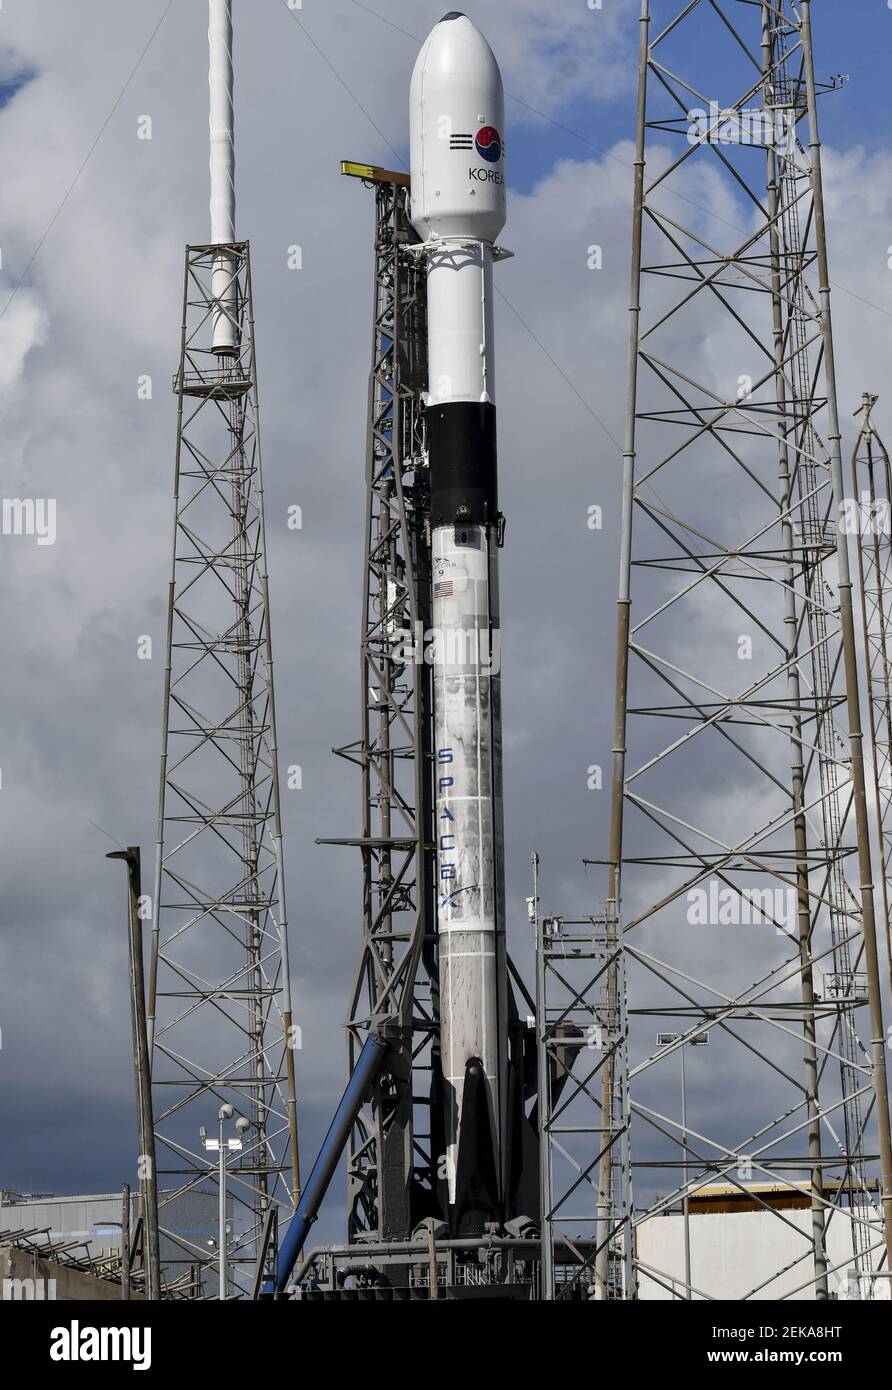 Jul 20, 2020; Estación de la Fuerza Aérea de Cabo Cañaveral, FL, EE.UU.; UN cohete SpacX Falcon 9 está preparado para su lanzamiento desde la Estación de la Fuerza Aérea de Cabo Cañaveral el lunes, 20 de julio de 2020. El cohete transporta ANASIS II, un satélite de seguridad nacional para Corea del Sur. Crédito obligatorio: Craig Bailey/FLORIDA HOY a través de USA TODAY NETWORK/Sipa USA Foto de stock